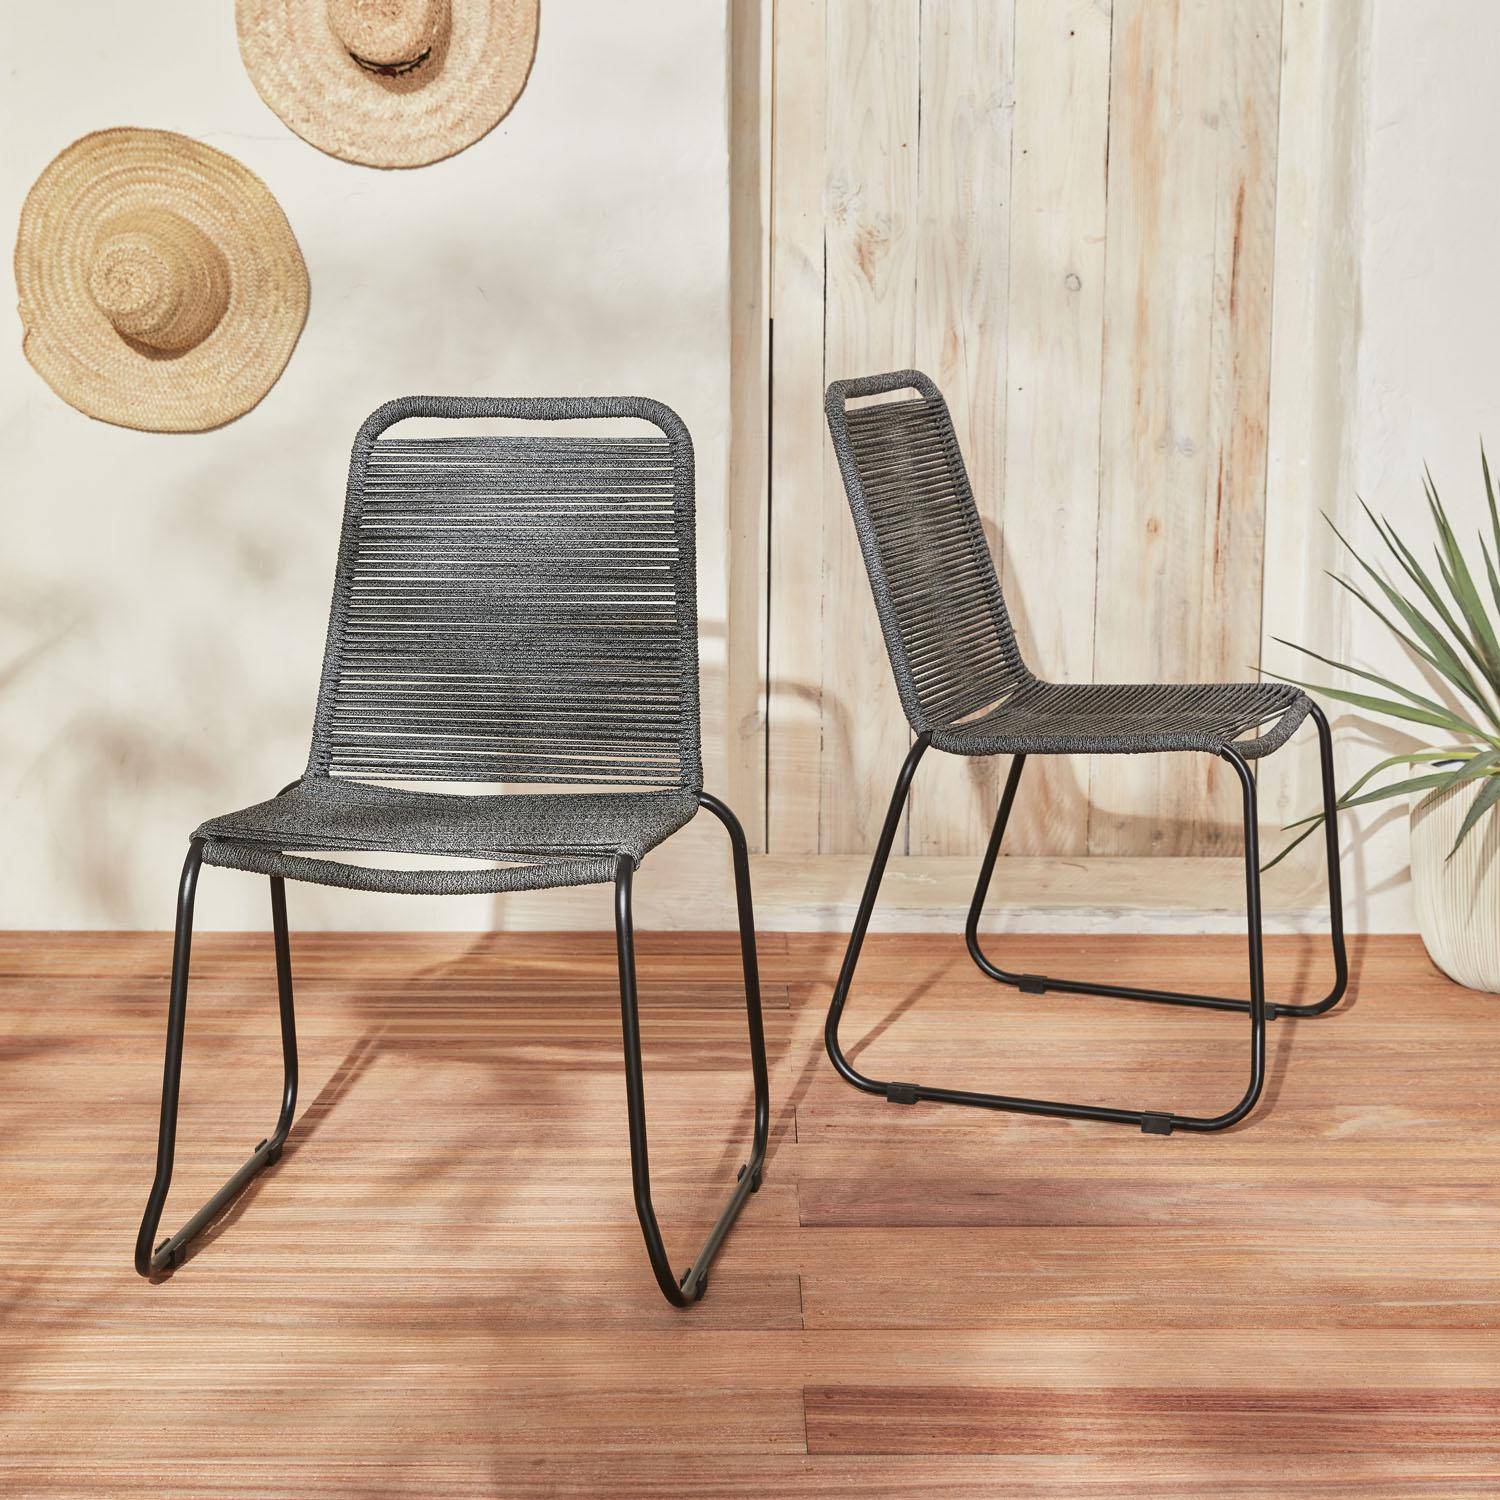 Lote de 2 sillas de jardín de cuerda BRASILIA, gris jaspeado, apilables, para exterior Photo1